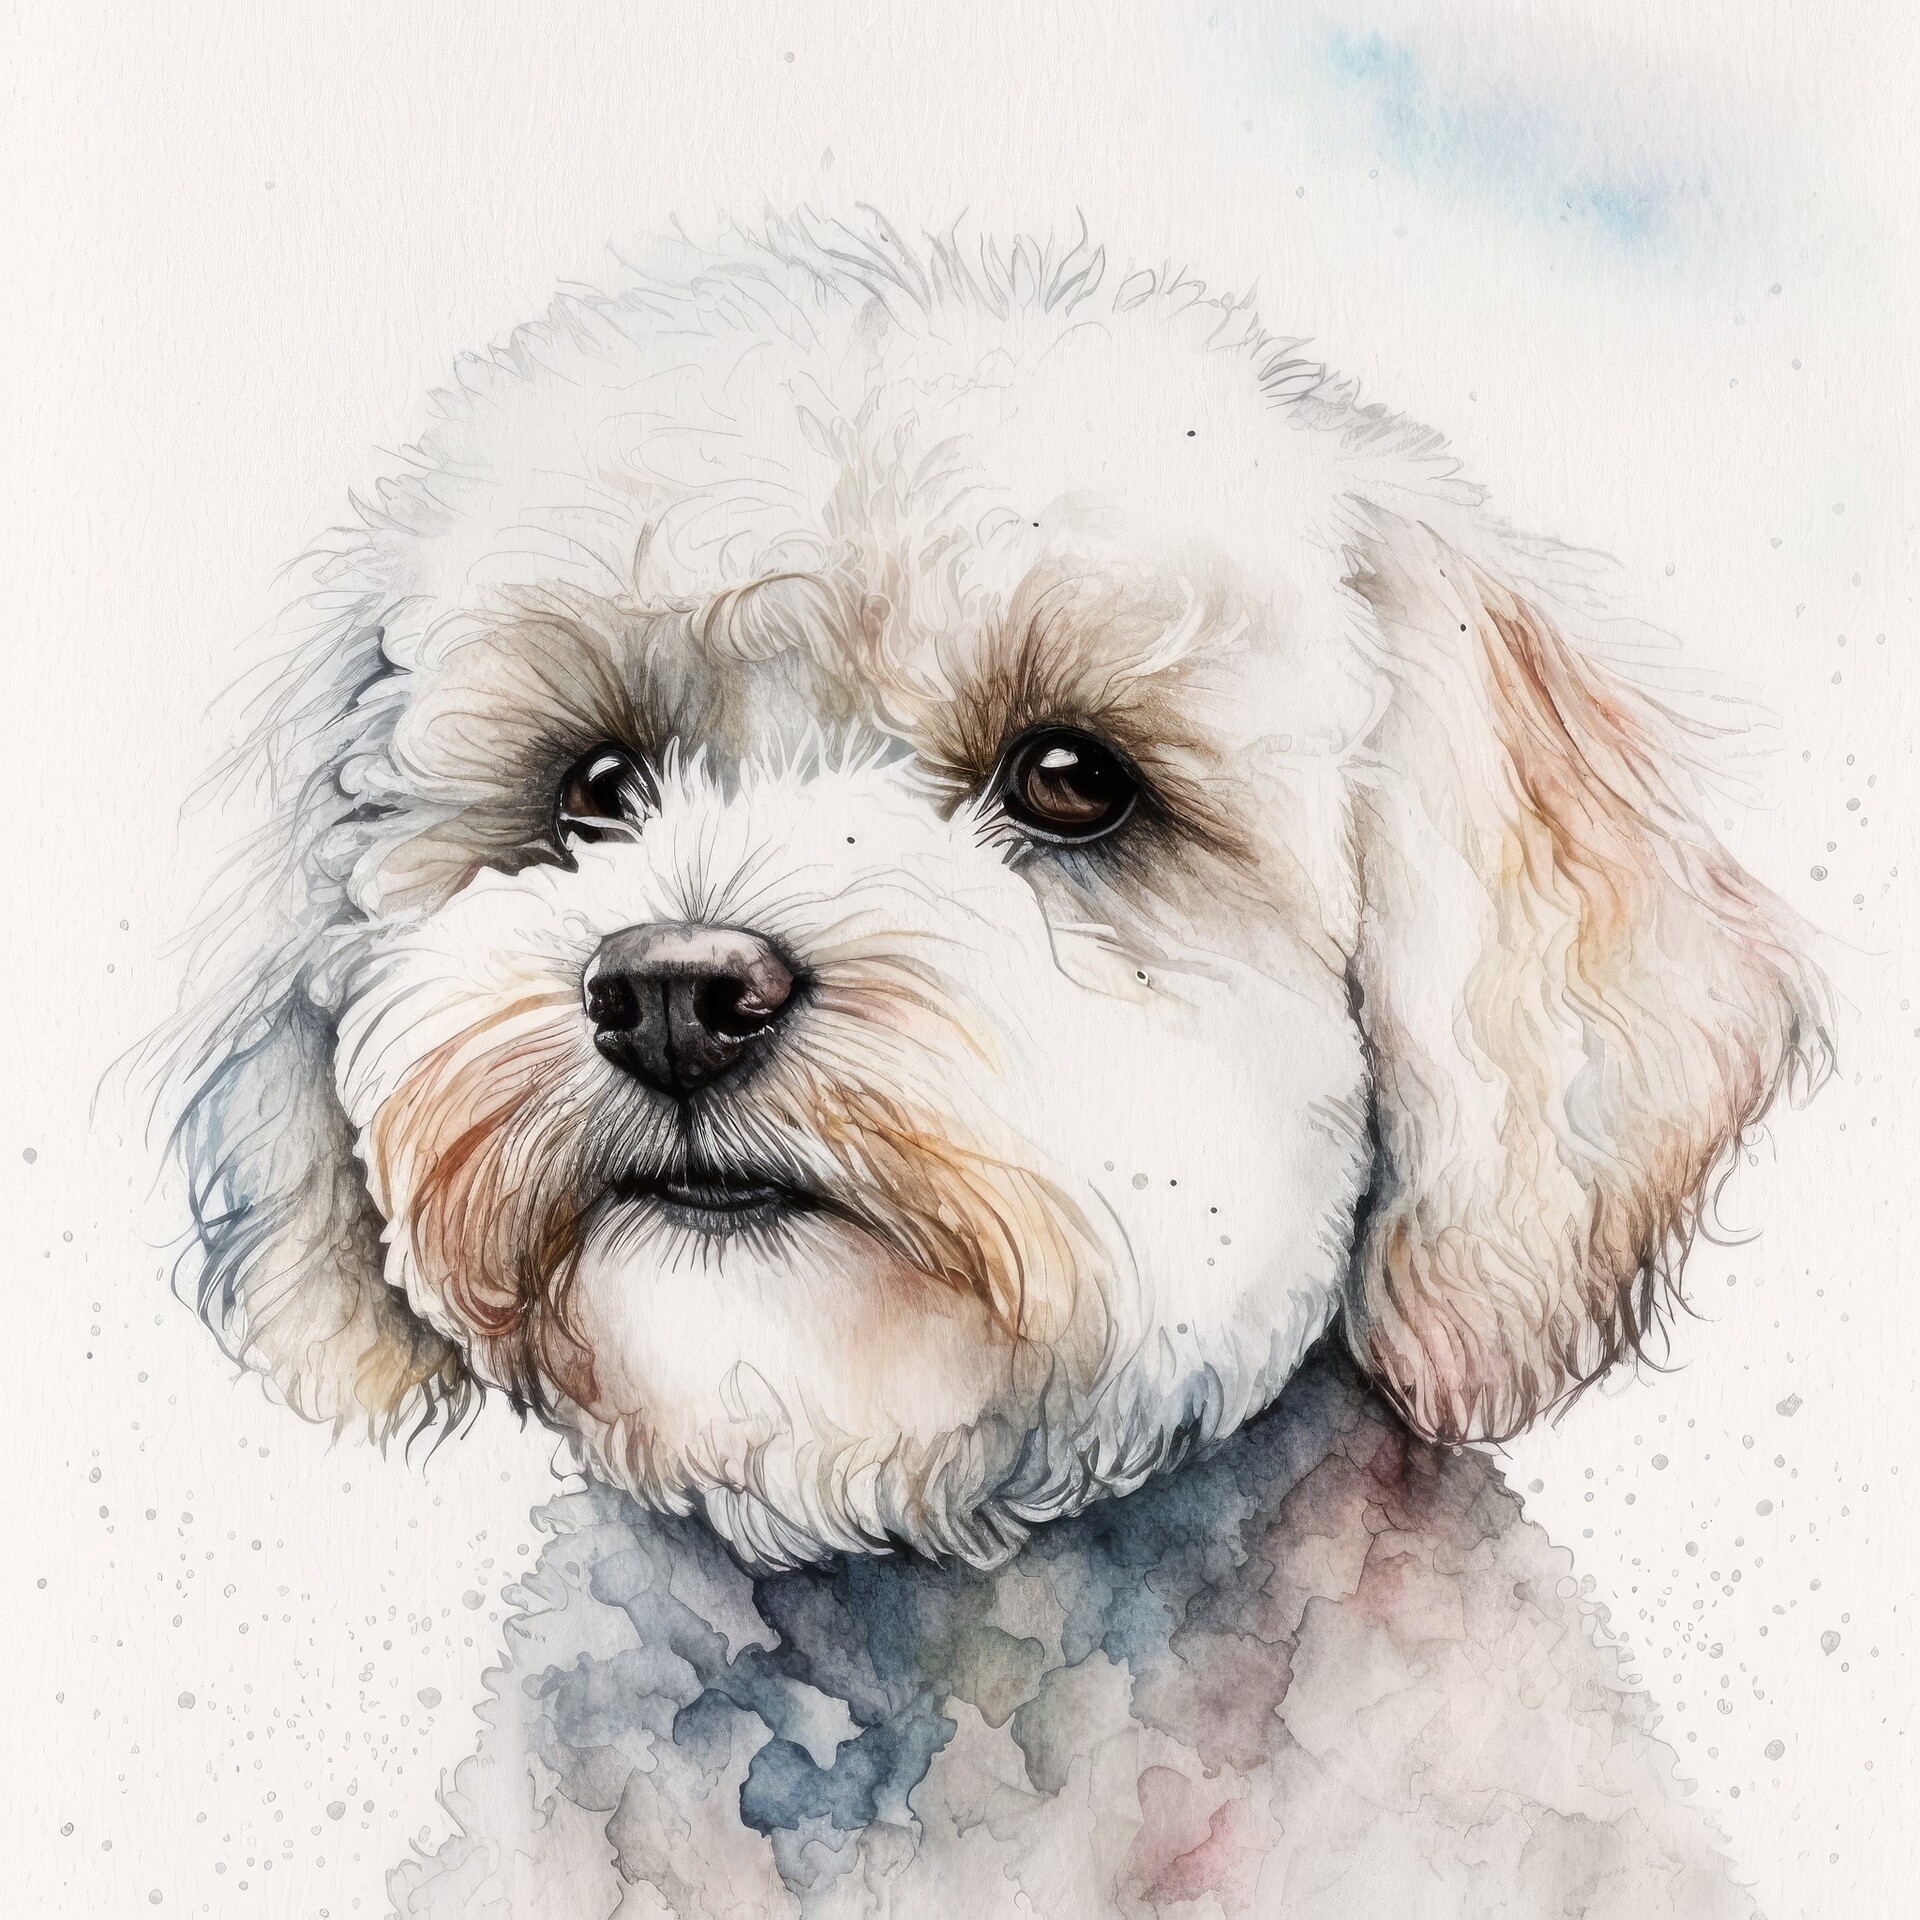 Bichon Frise Dog Portrait Watercolor Painting by Francois Ringuette